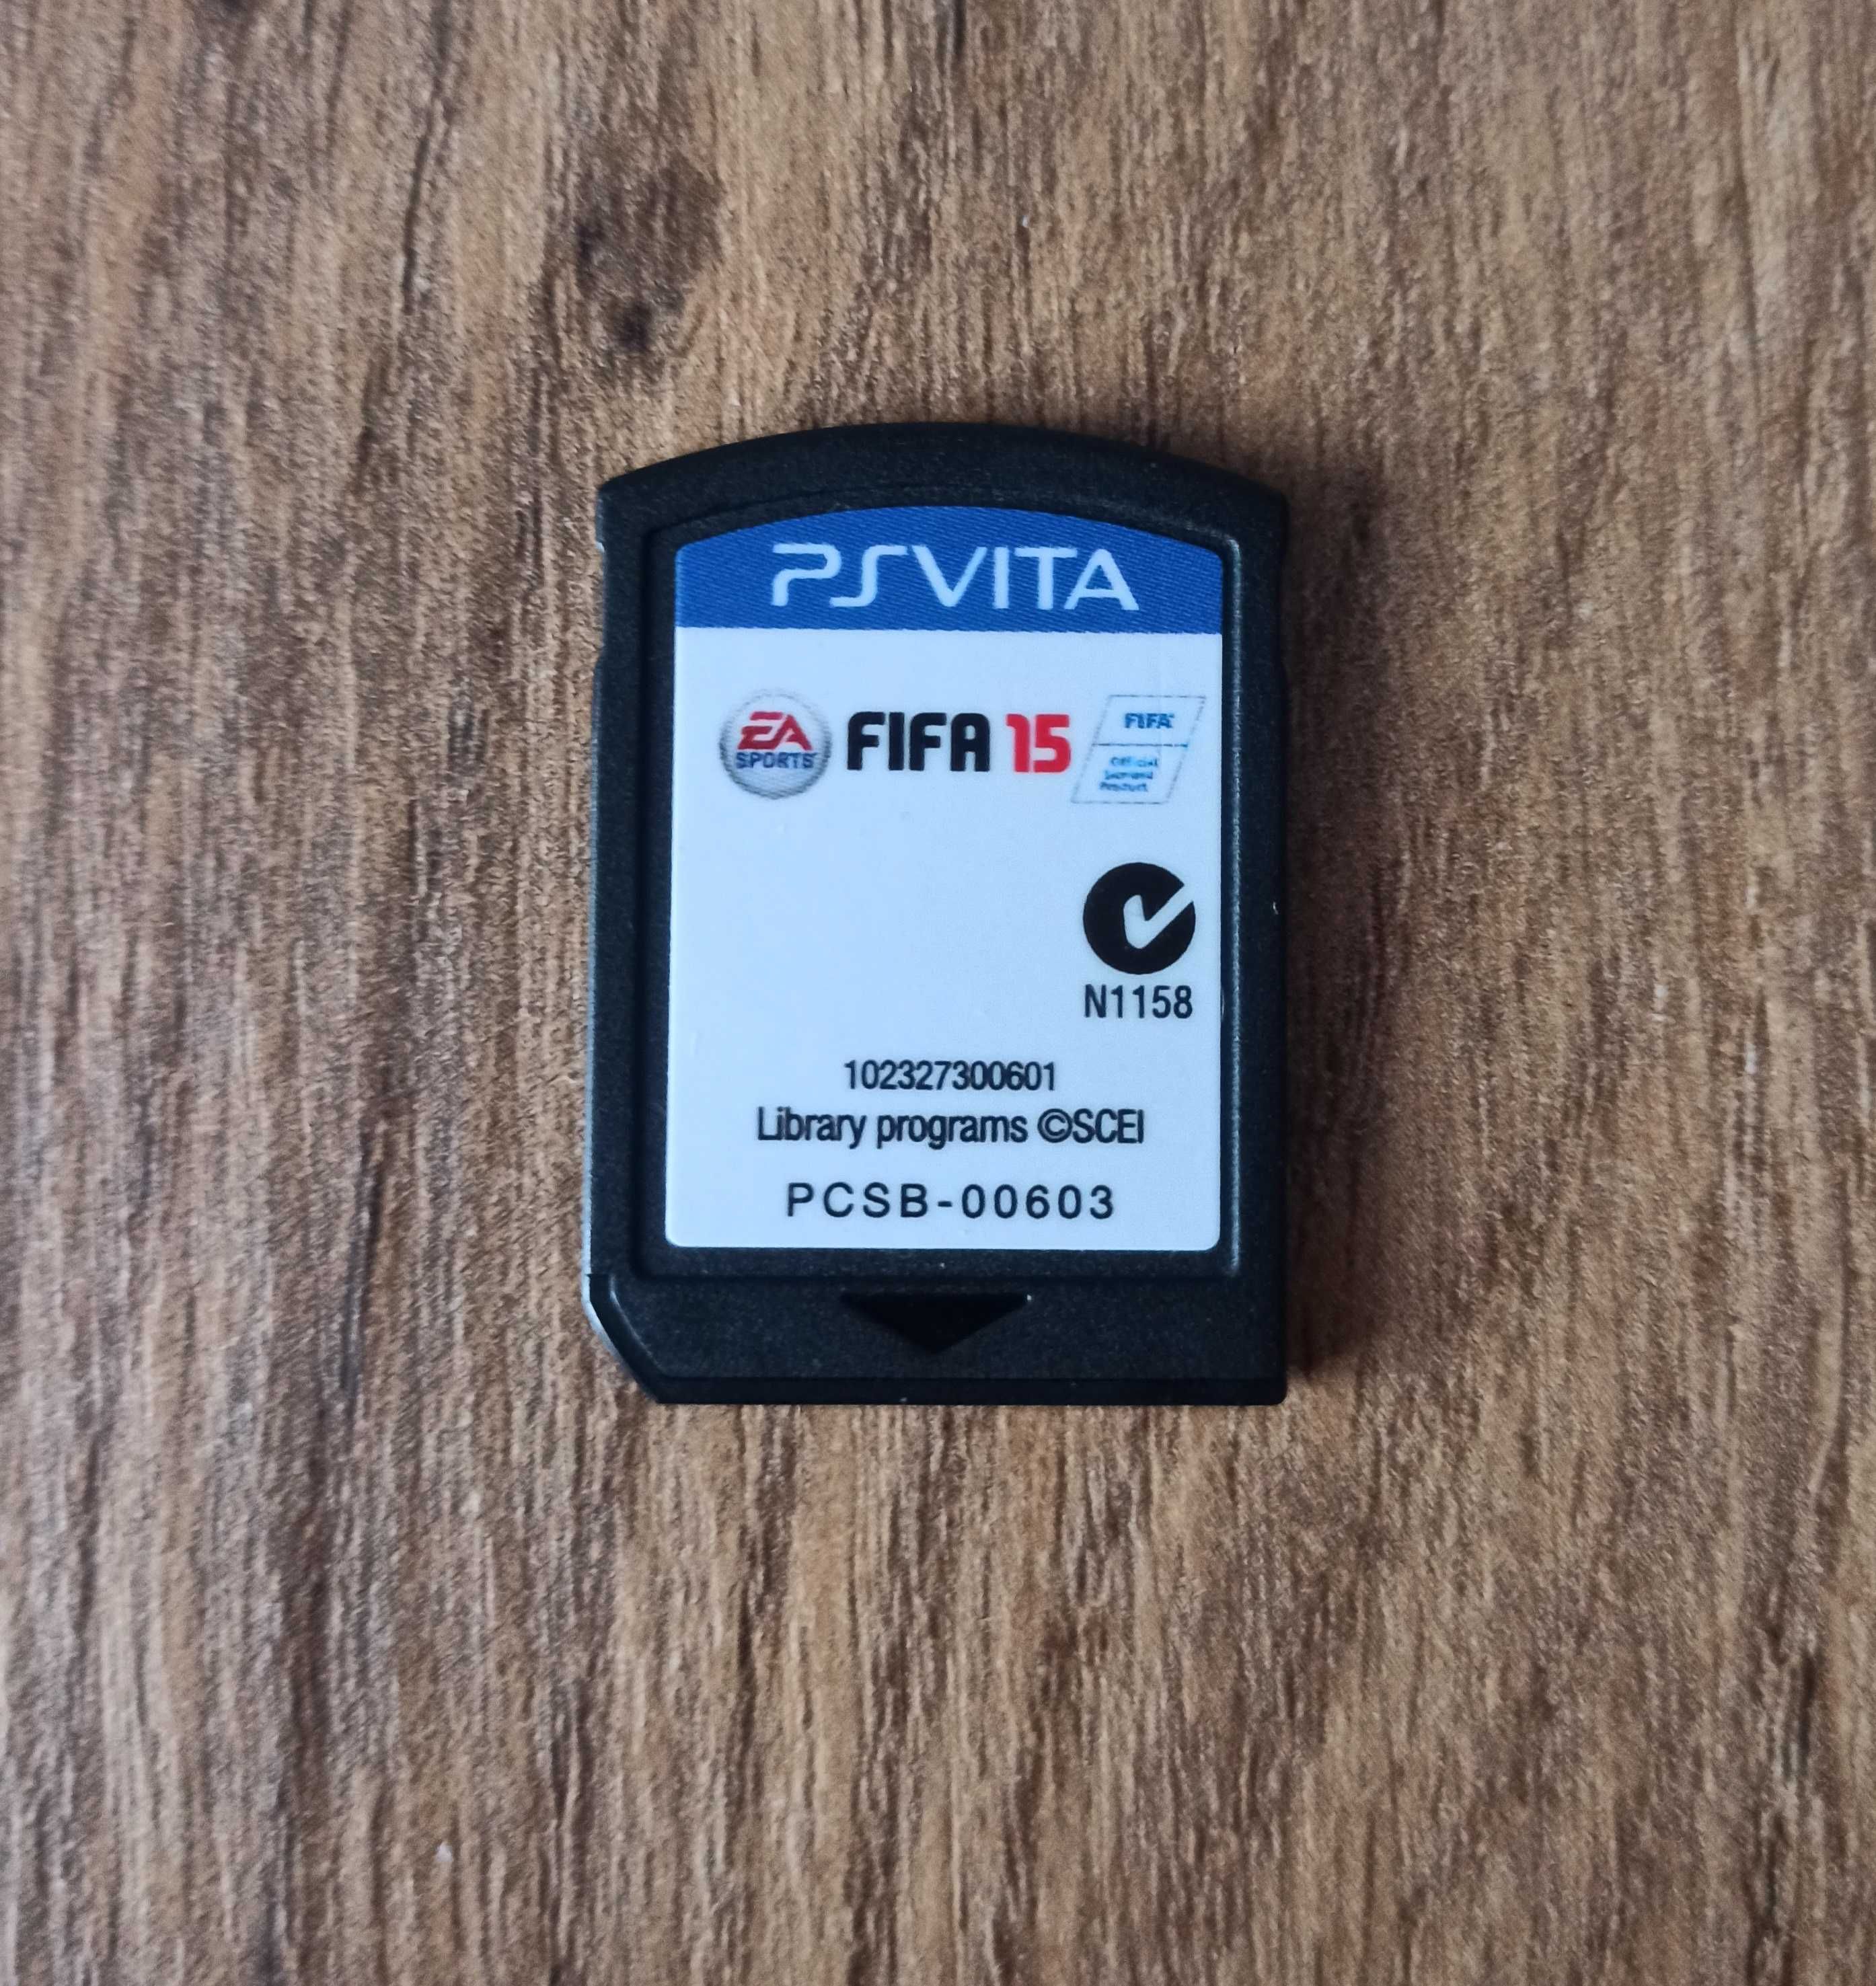 Fifa 15 PS Vita Kartridż